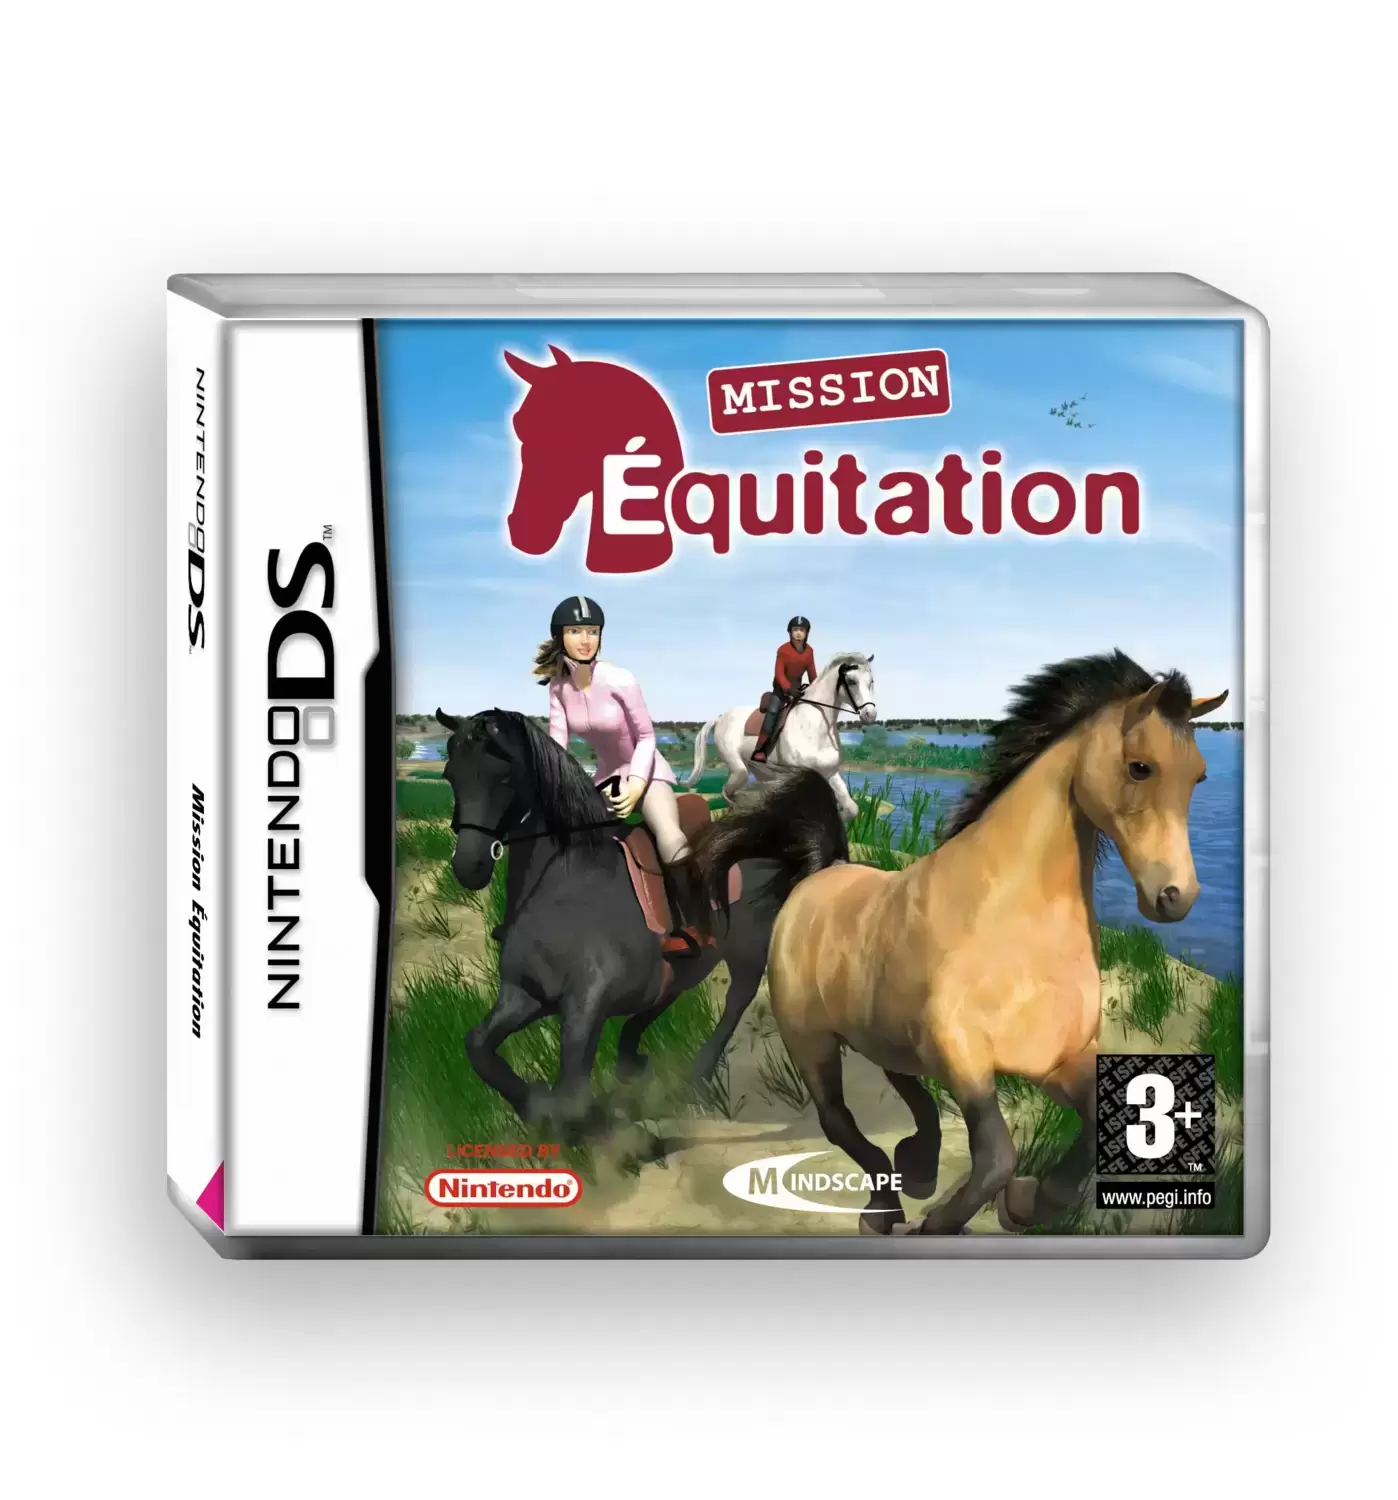 Jeux Nintendo DS - Mission Equitation